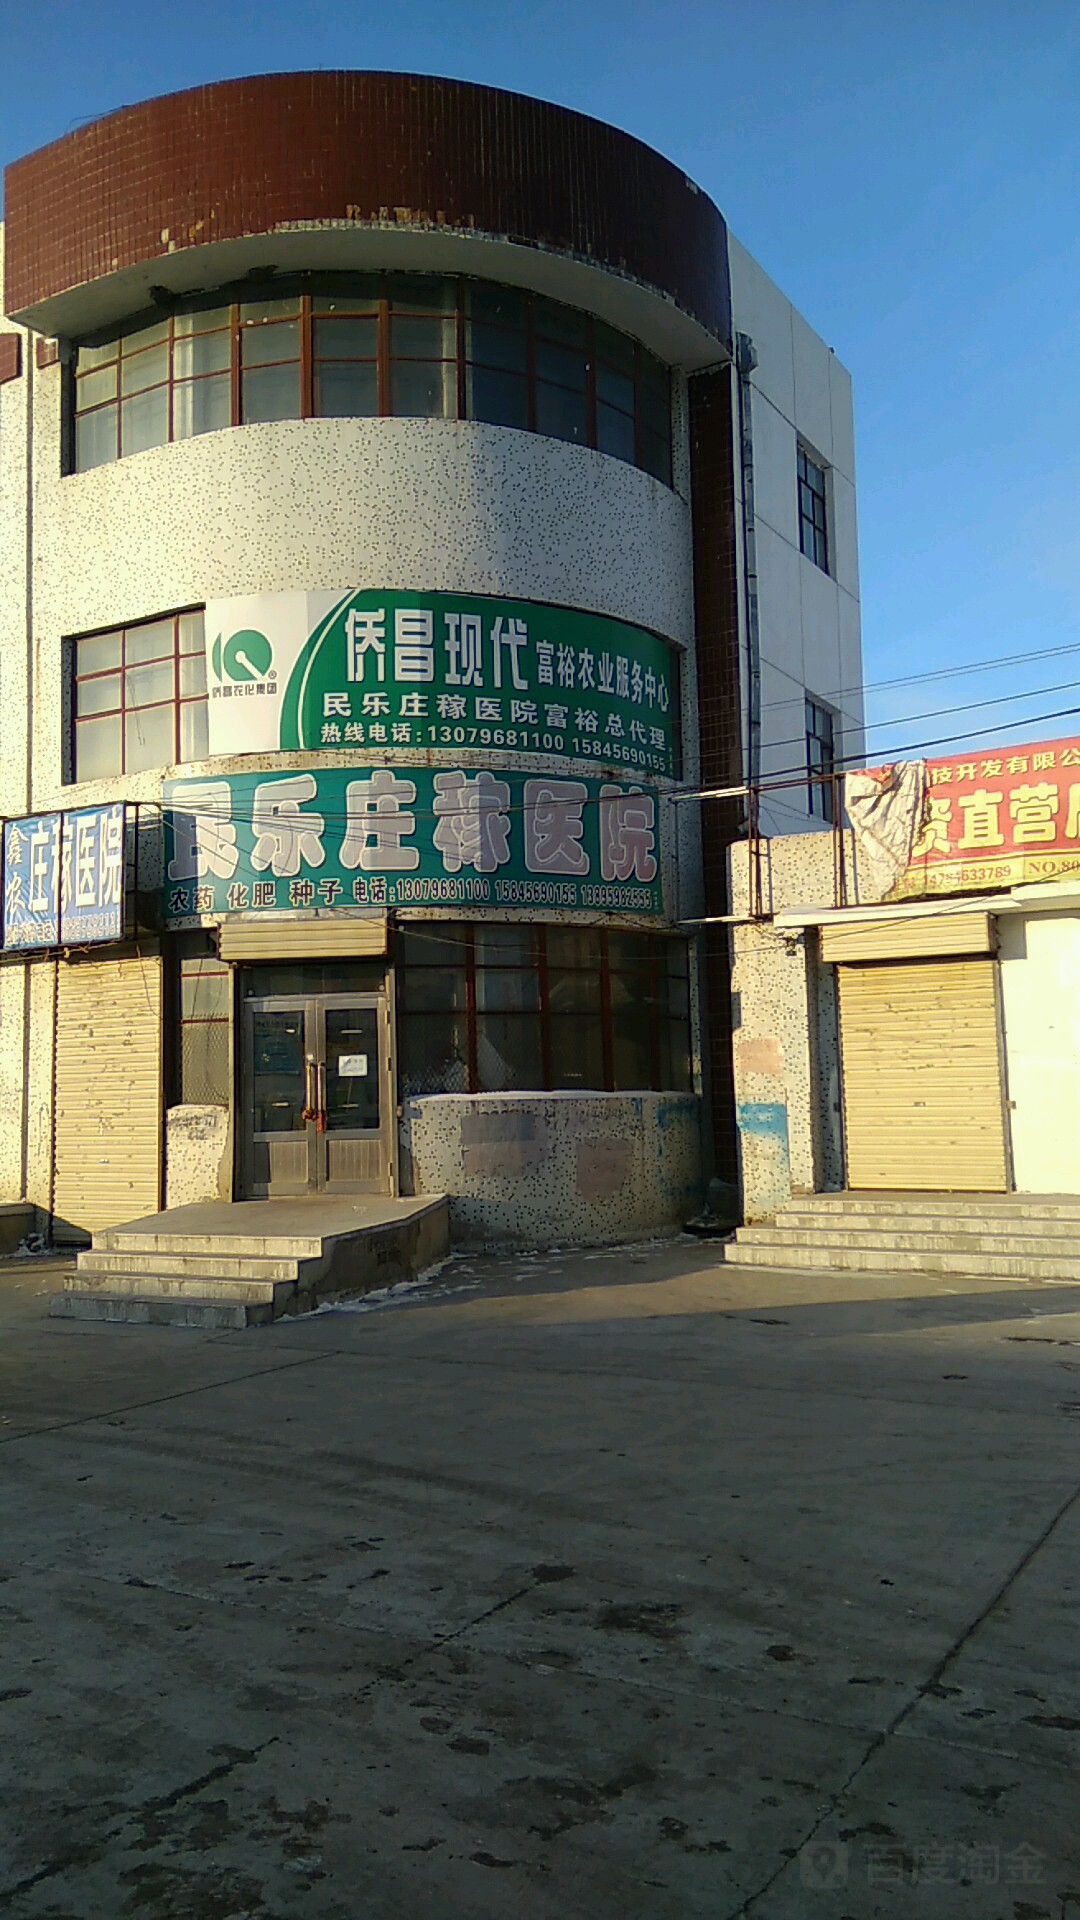 僑昌現代富裕農業服務中心